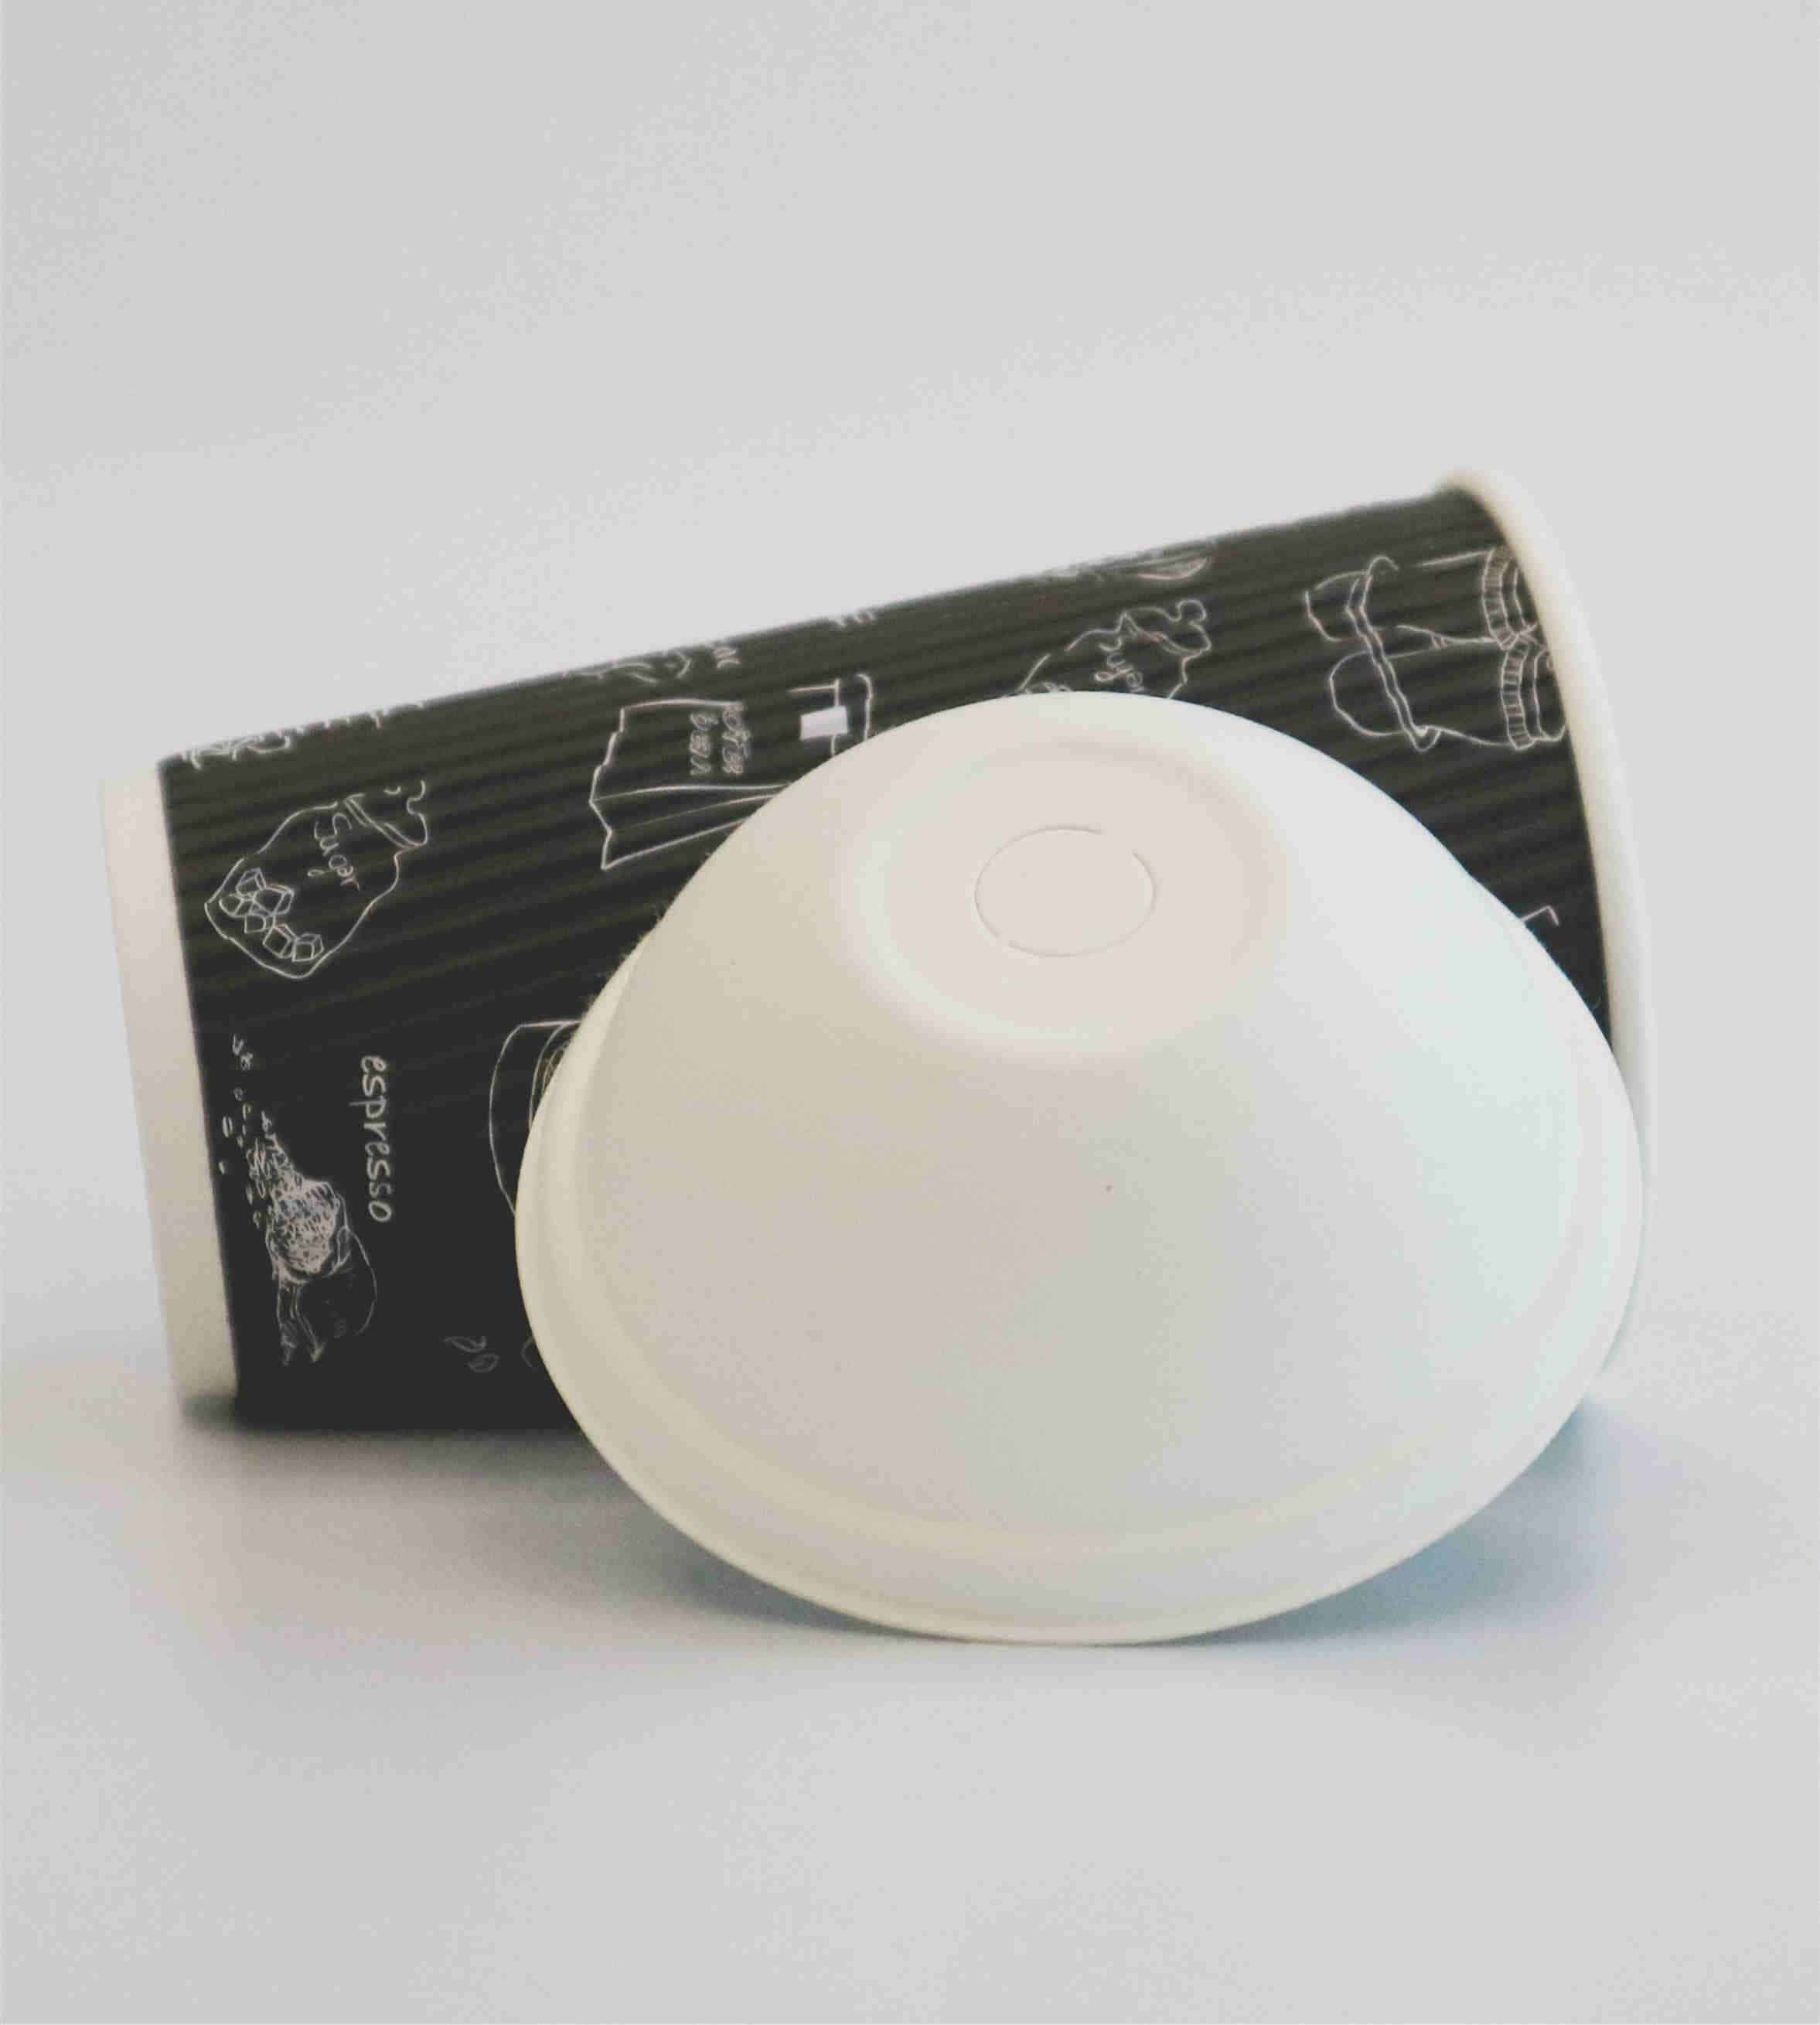 Bagasse compostable boba lid from GREENOLIVE - Paper lid manufafcturer